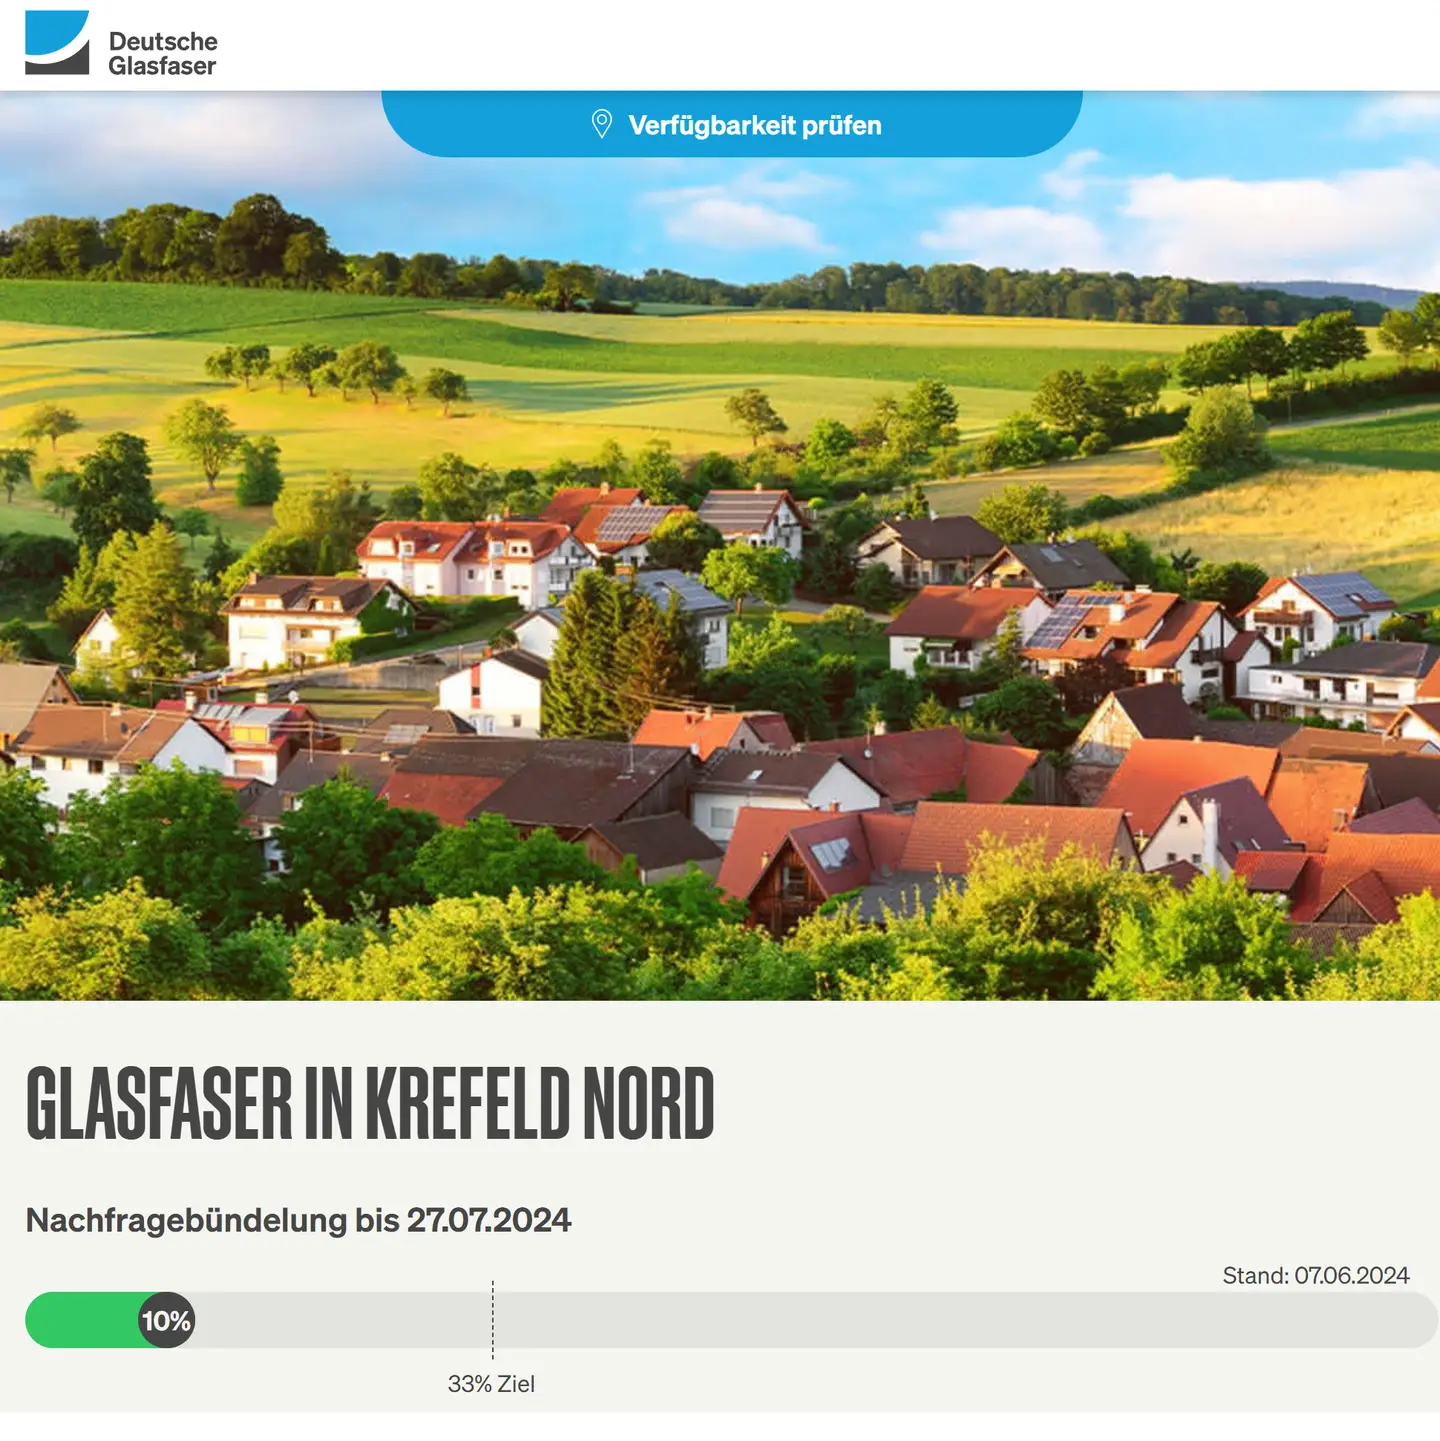 Screenshot von "Deutsche Glasfaser", oben DG Logo, ein Landschaftsbild, Schriftzüge "Glasfaser in Krefeld-Nord", Nachfragebündelung bis 27.7.2024, Anzeige des aktuellen Stand